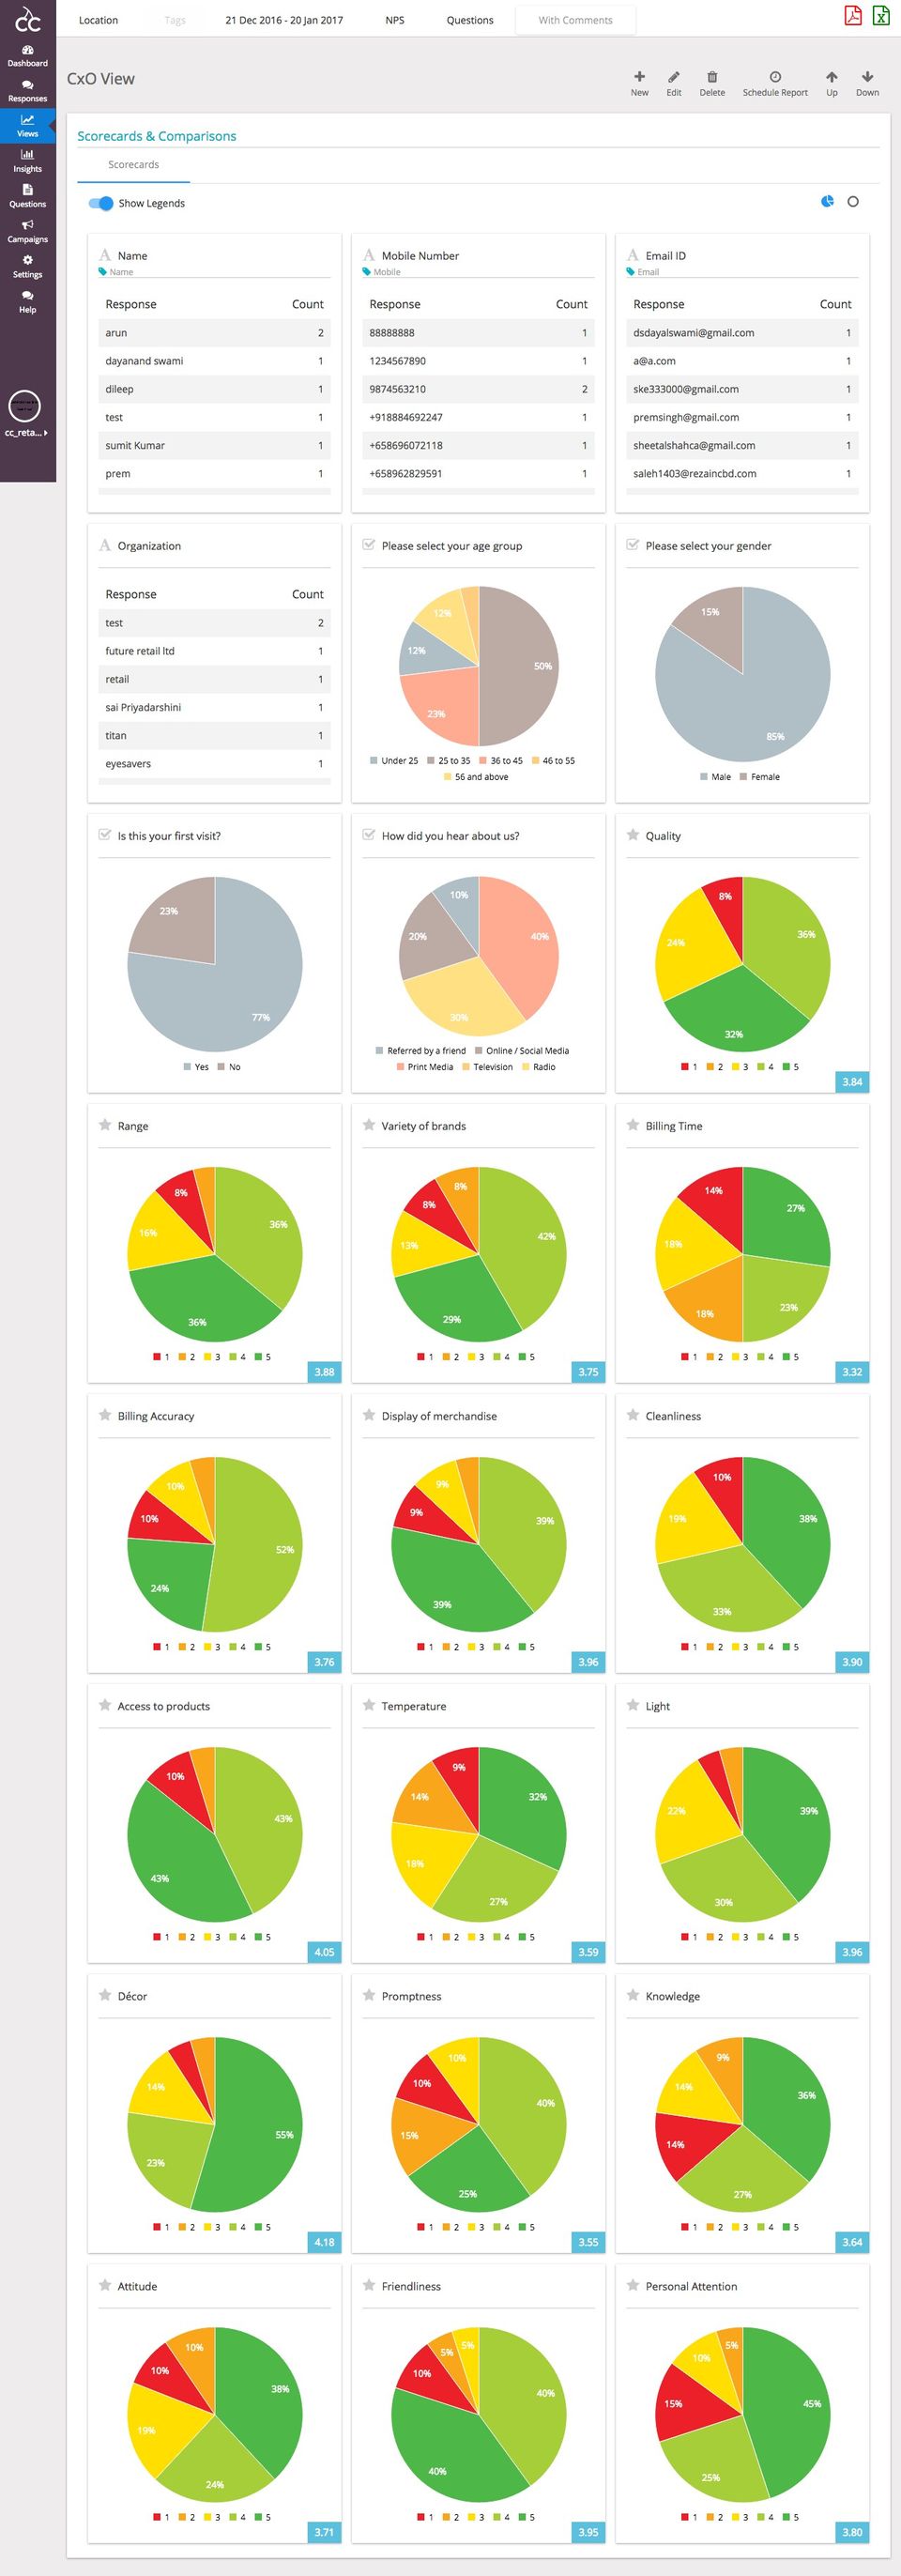 CloudCherry 360 Feedback screenshot: Customer Deep Dive Insights